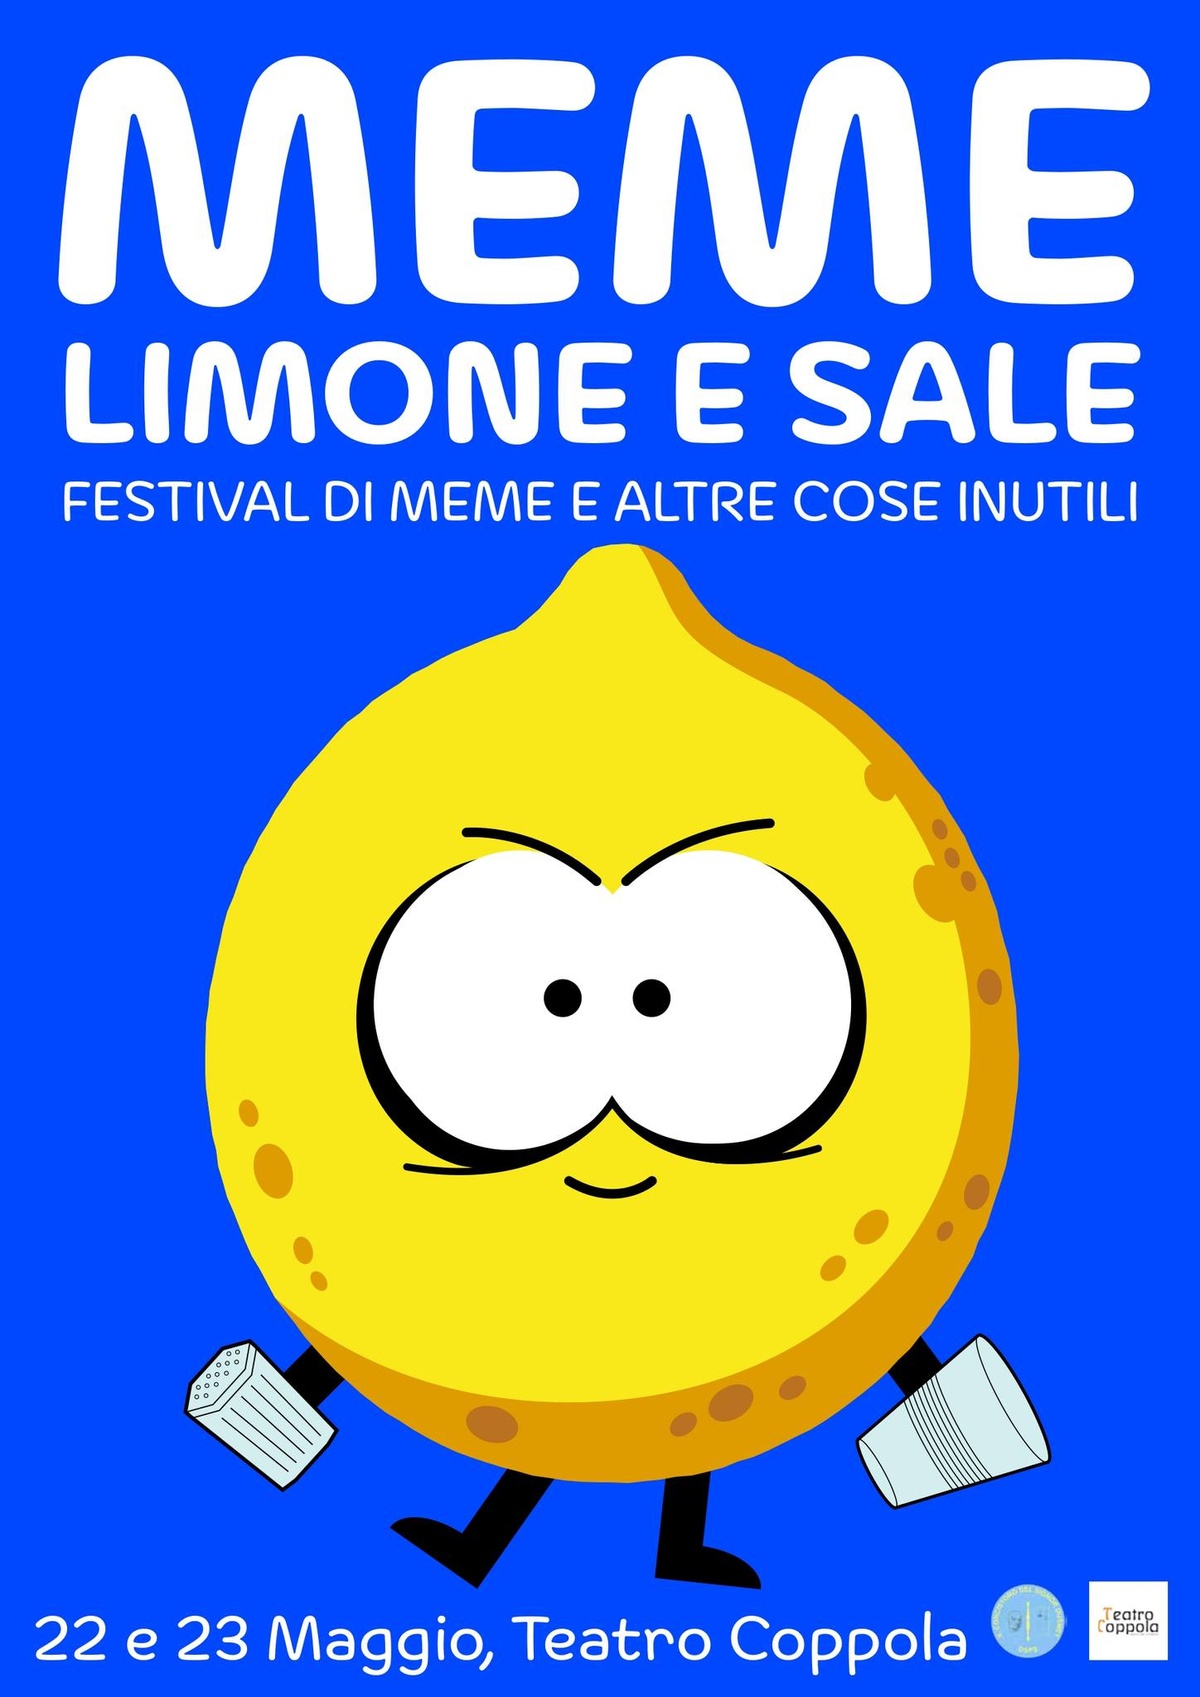 Meme limone e sale: Festival di meme e altre cose inutili